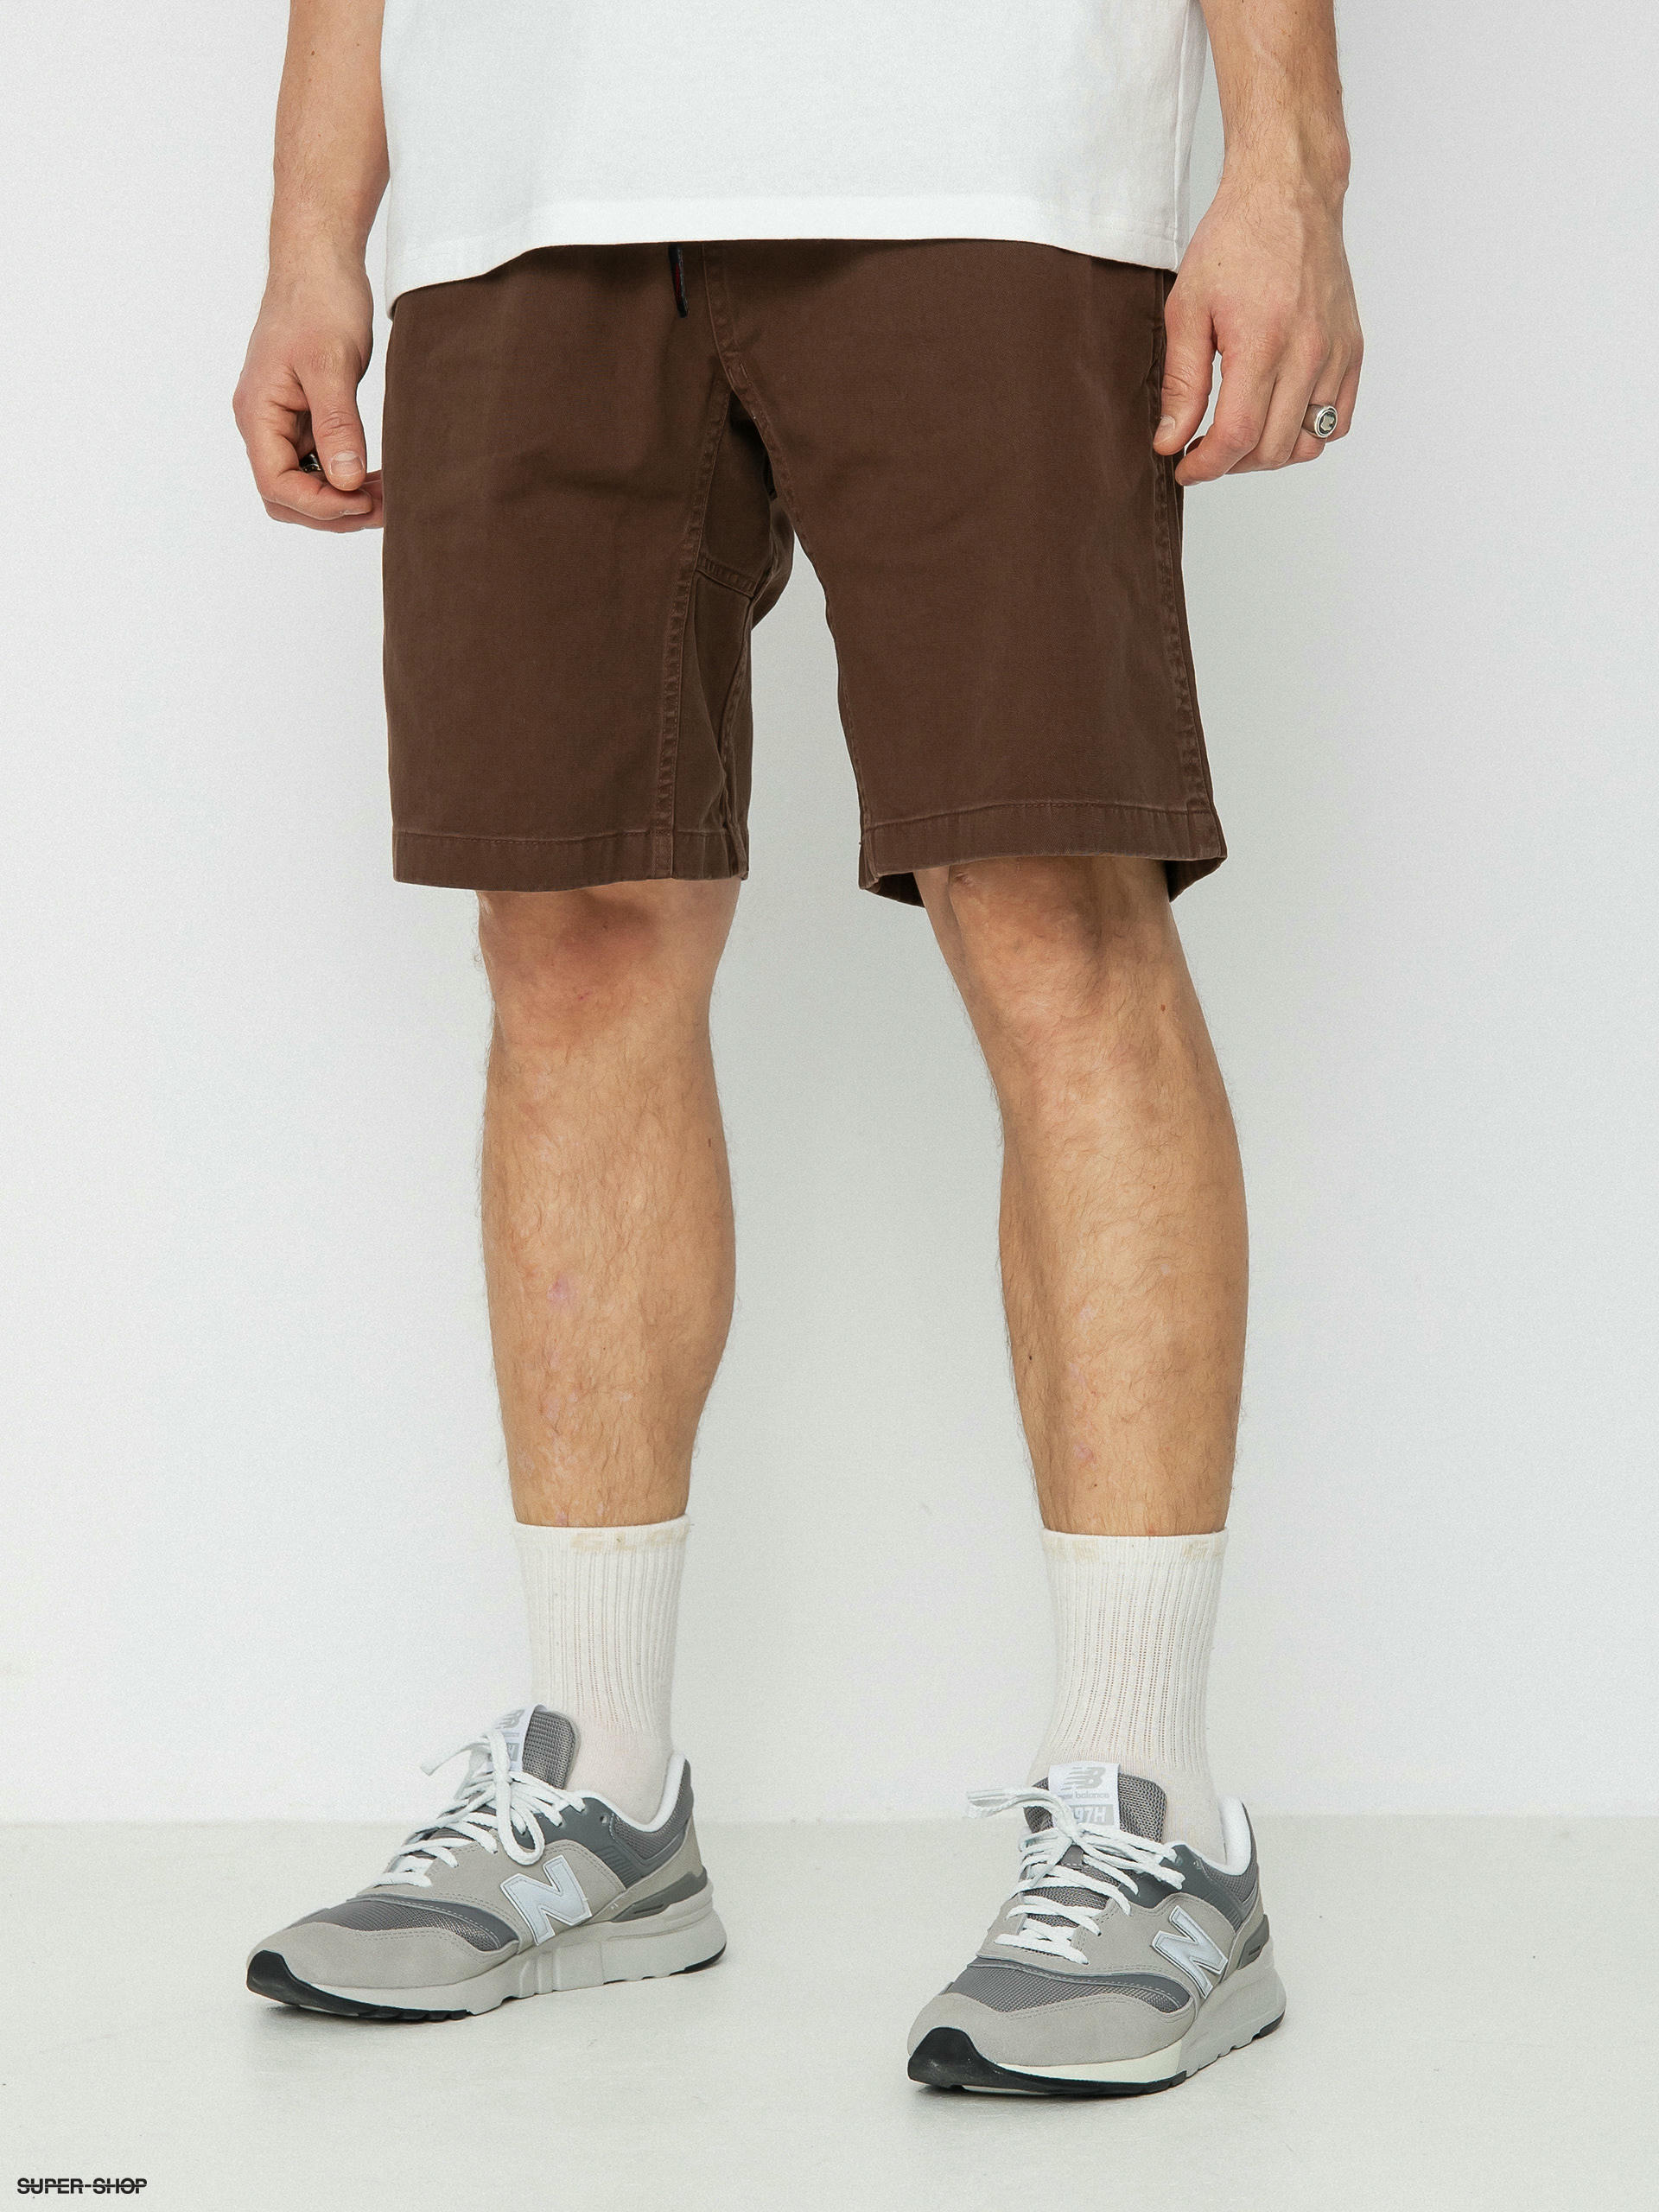 Men's Brown Shorts on Pinterest